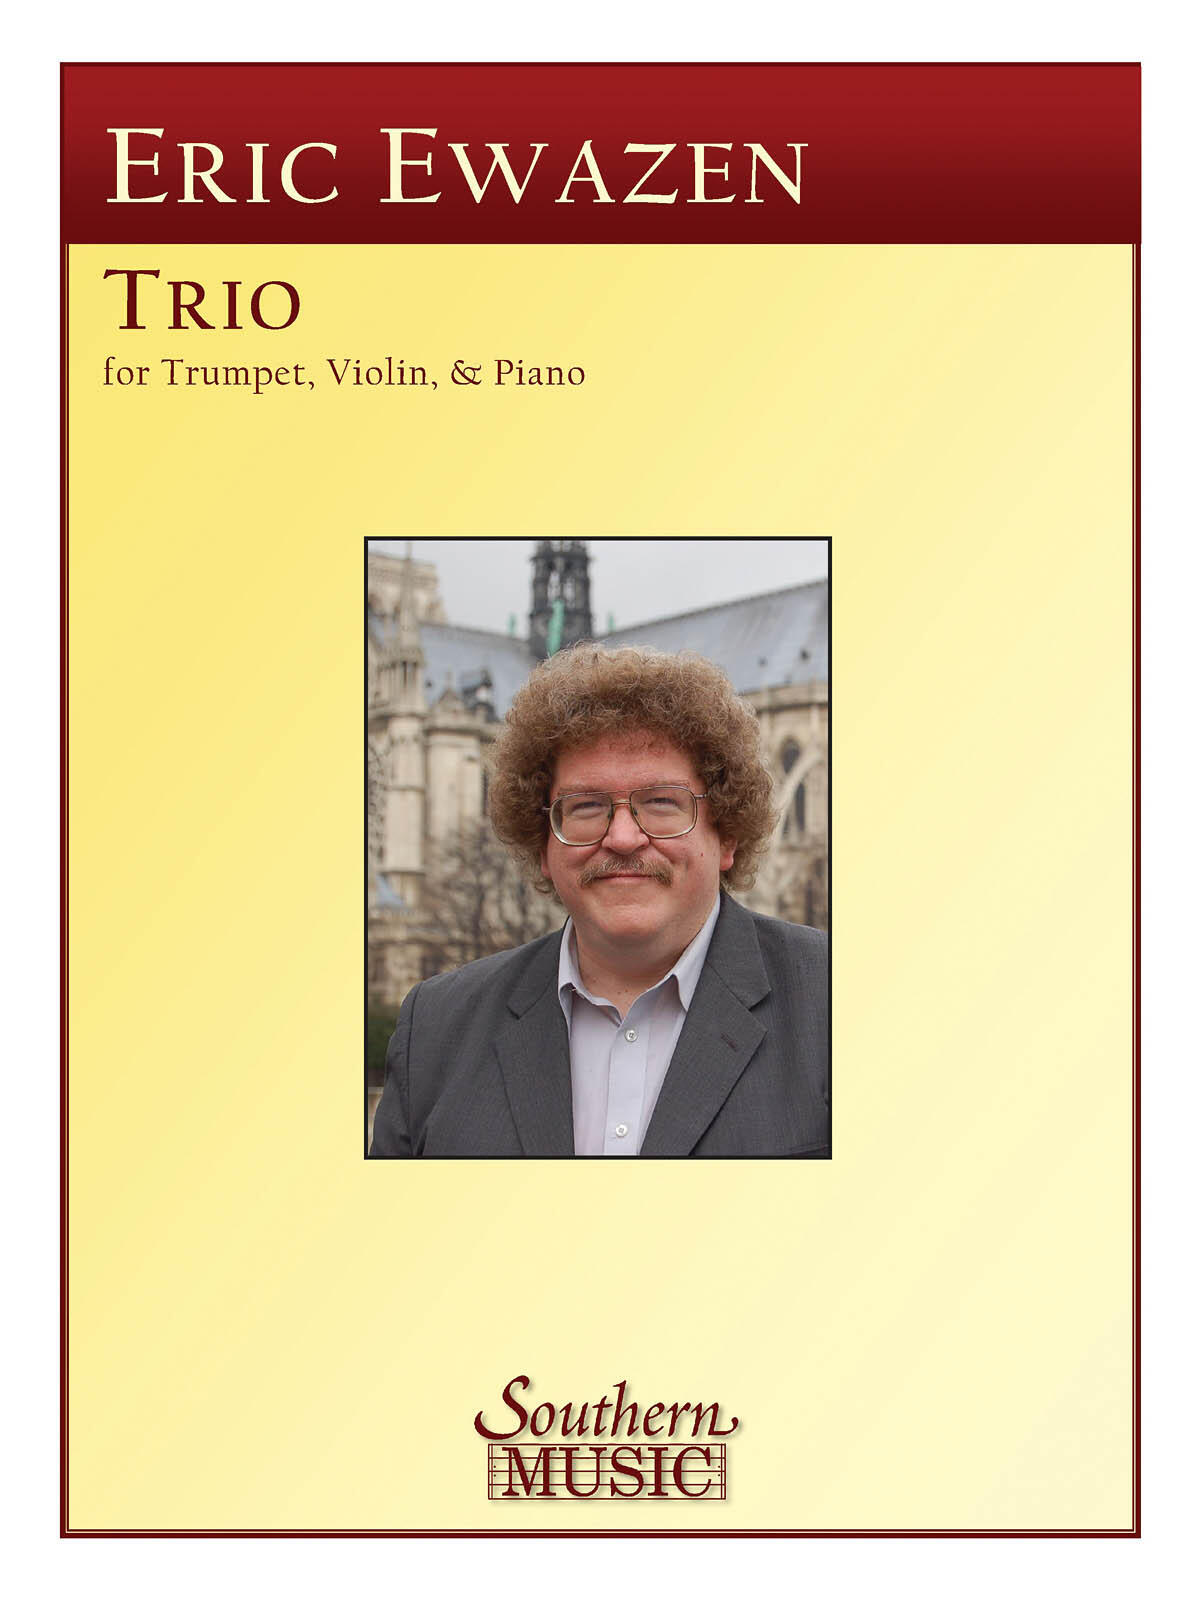 Trio (1992) For Trumpet, Violin And Piano  Eric Ewazen : photo 1